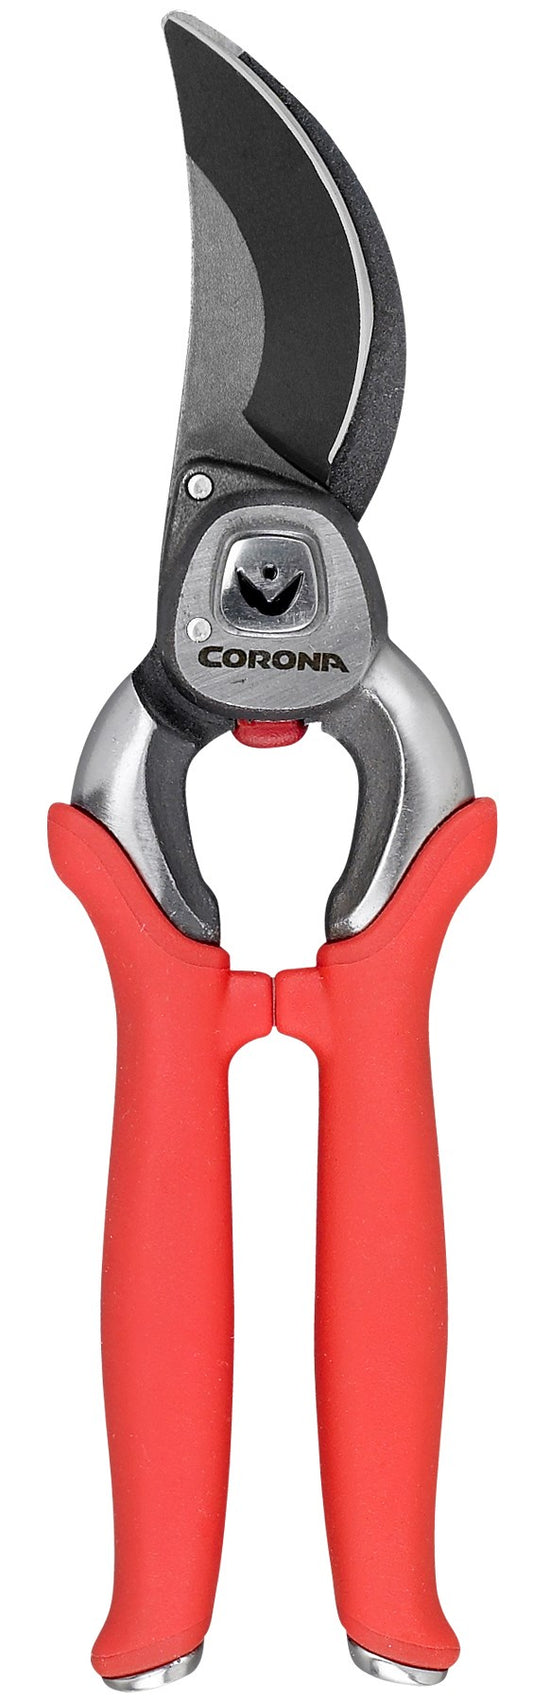 Corona Bp7200 1 Pro Cut Bypass Pruner